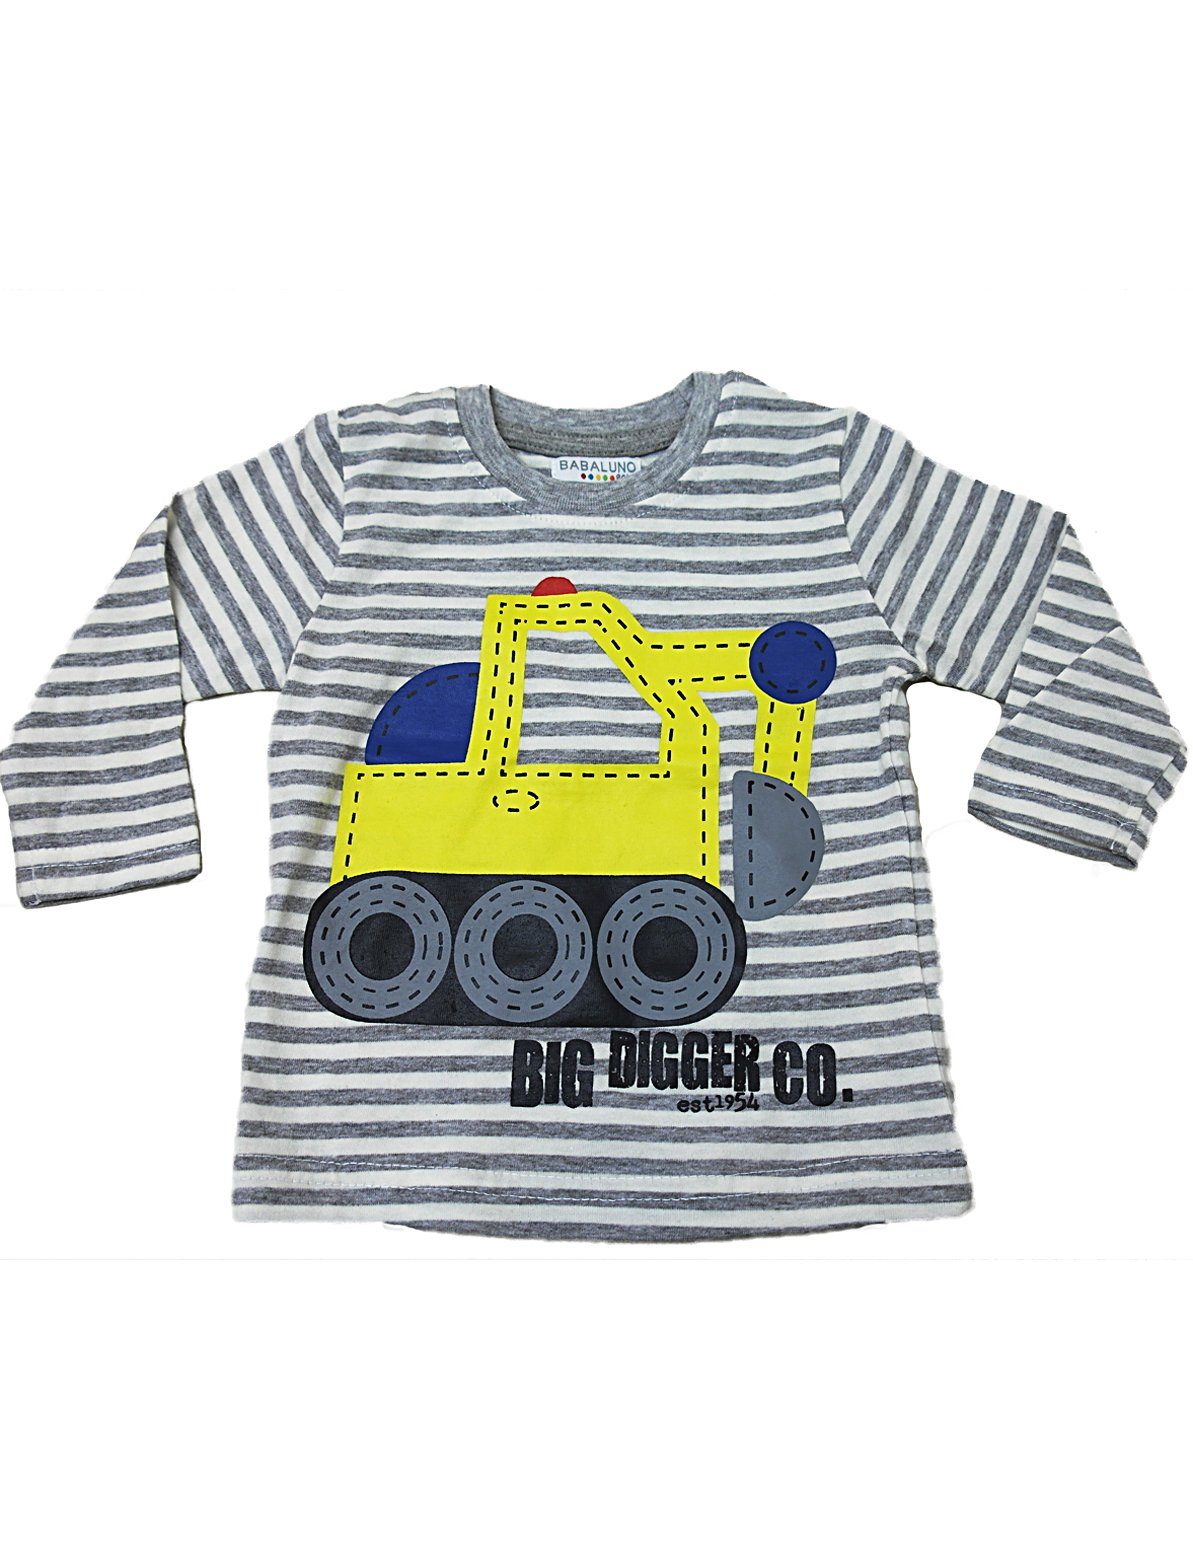 YESET Langarmshirt Kinder Baby Shirt Langarm Streifen Digger-5 Grau-Weiss